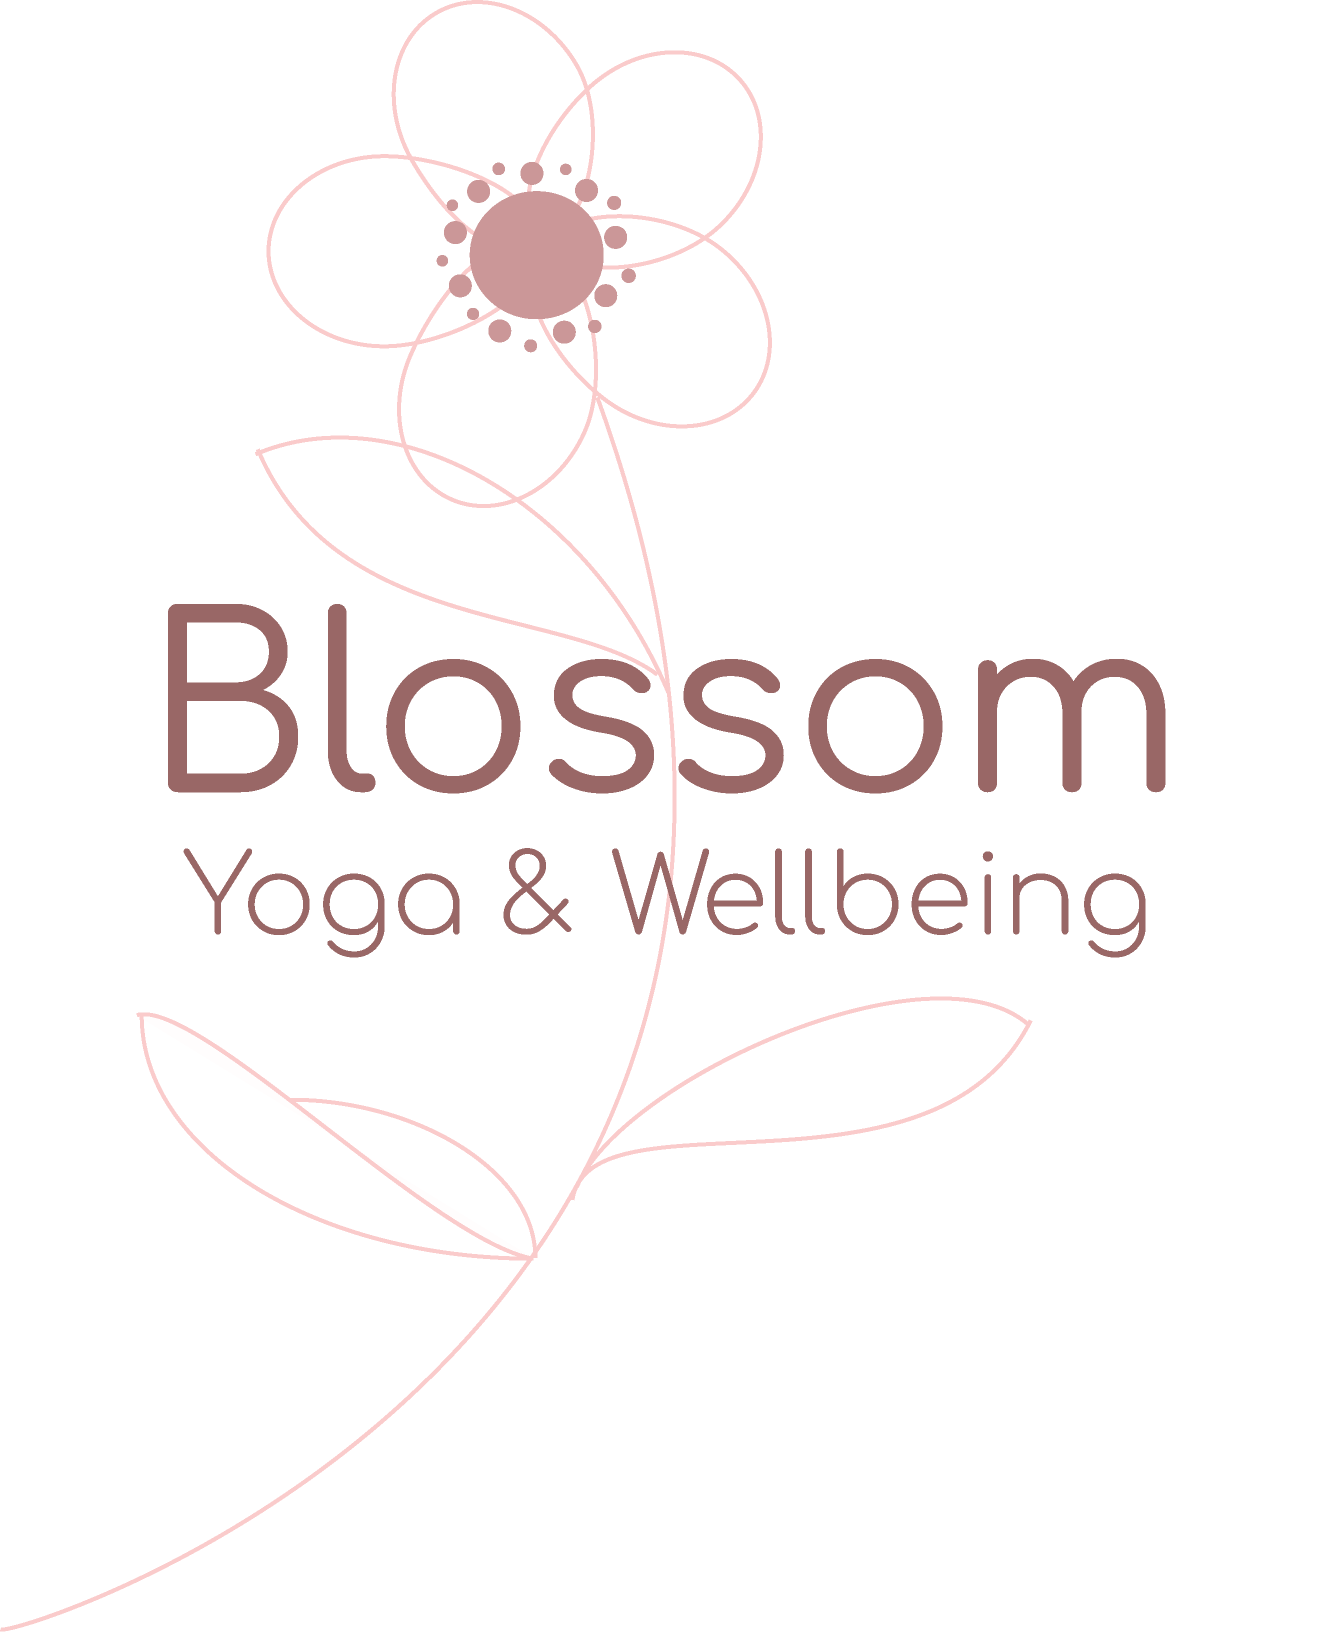 Blossom Logo - Index Of I Logos